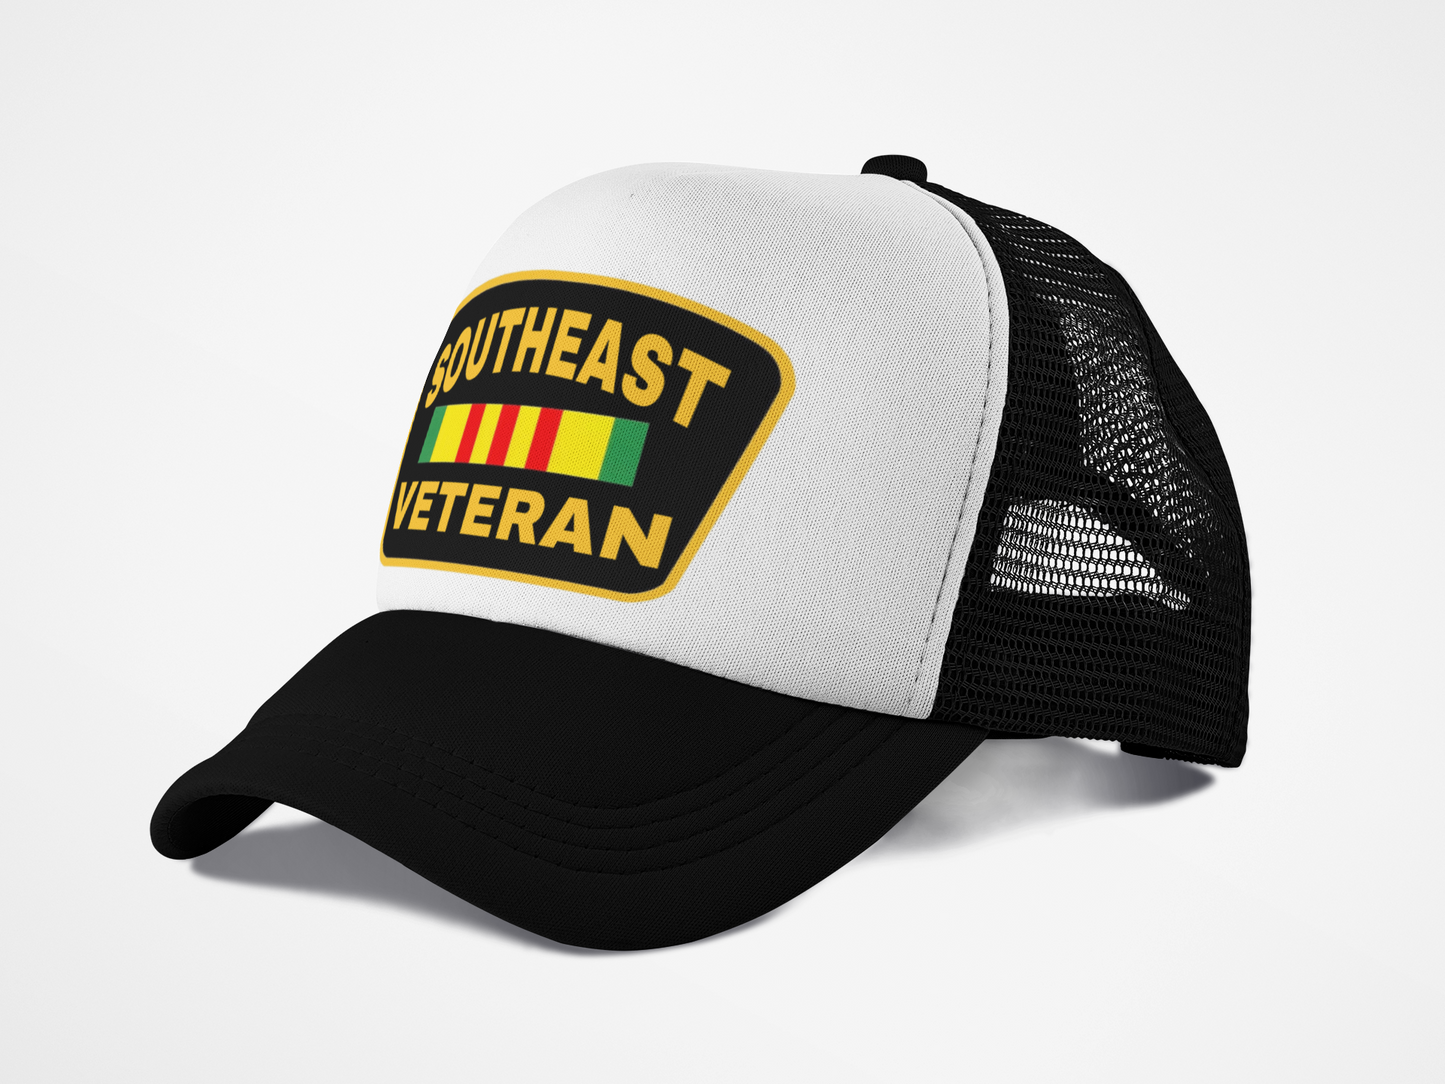 Southeast Veteran - Trucker Hat